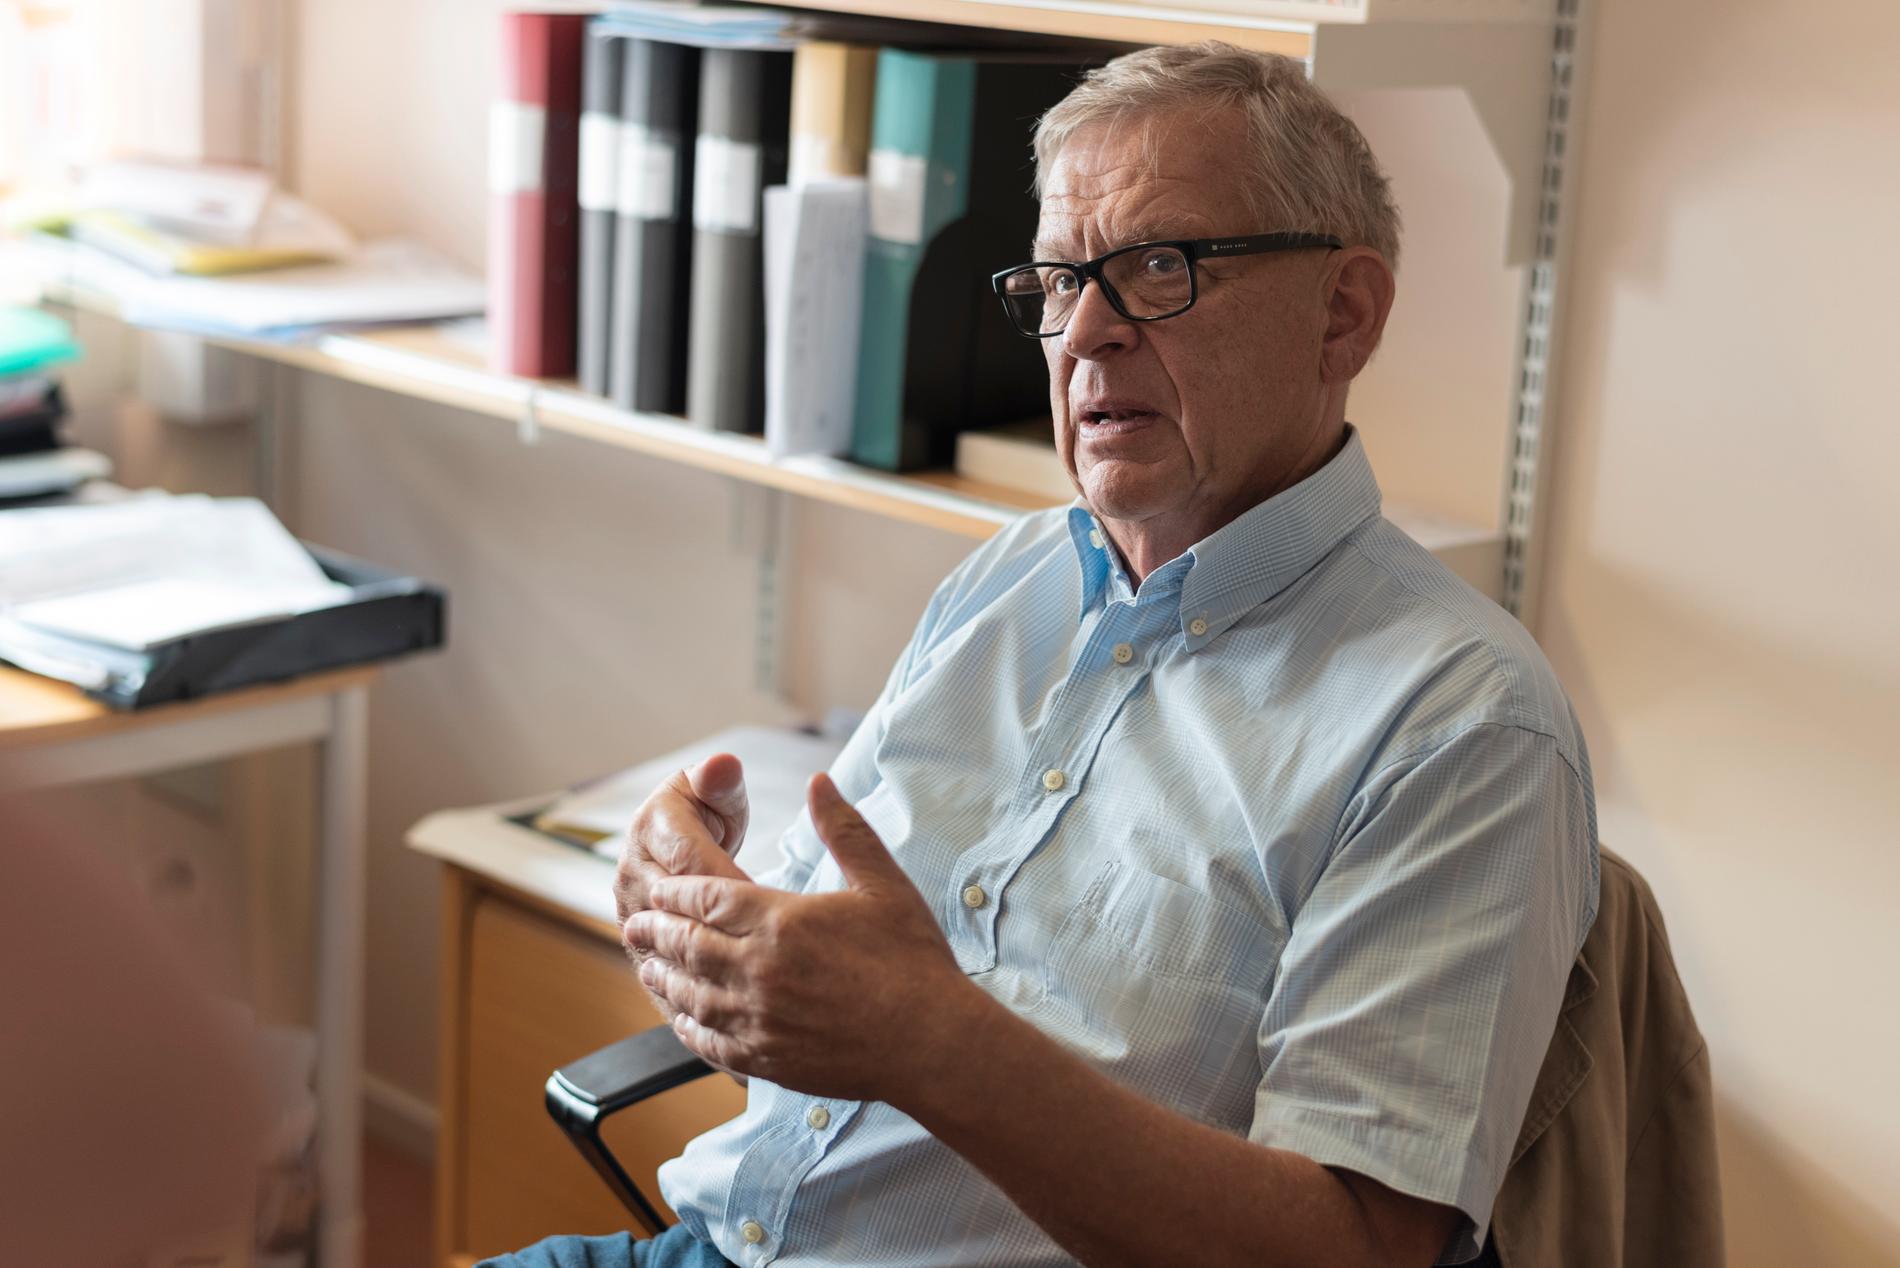 ”Det kräver både kompetens och en noggrannhet för att kunna ställa en  demensdiagnos. Det är inga patienter man tar på två minuter”, säger Bengt Winblad, professor i geriatrik vid Karolinska institutet.